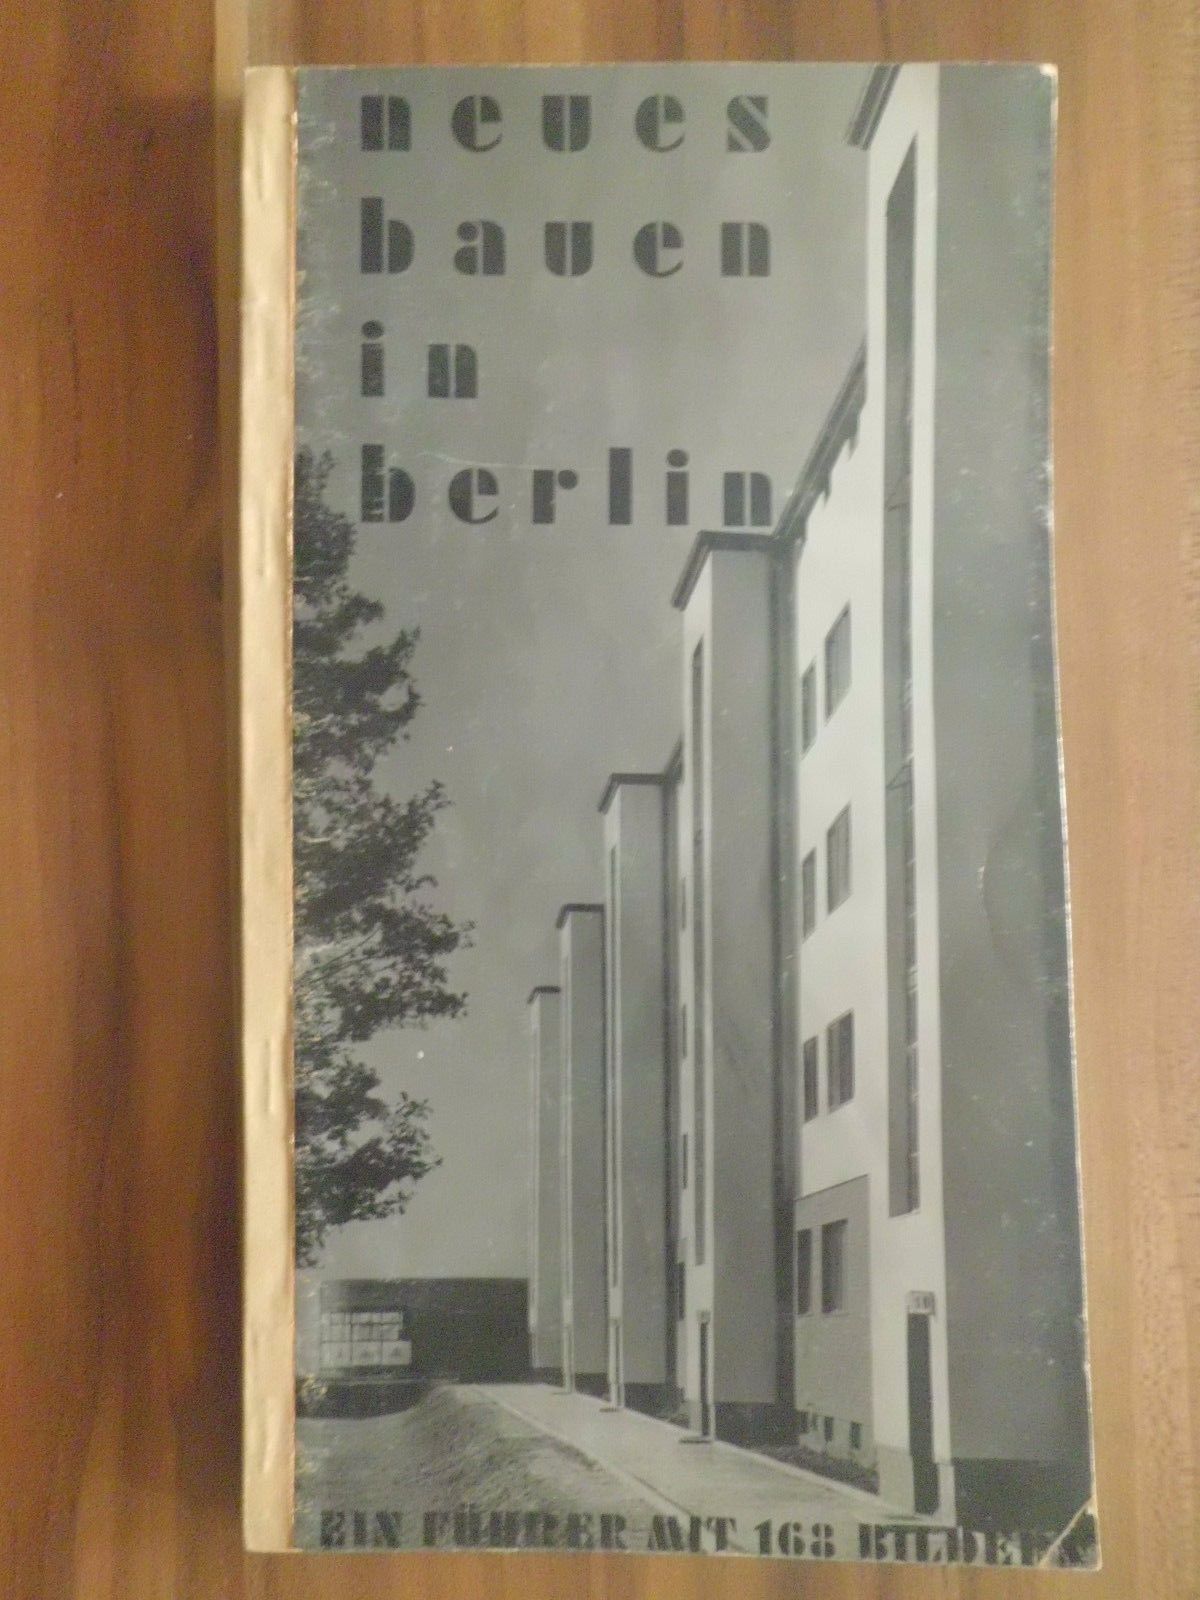  Neues Bauen in Berlin. H. Johannes. Ein Führer mit 168 Bildern mit Plan, 1931